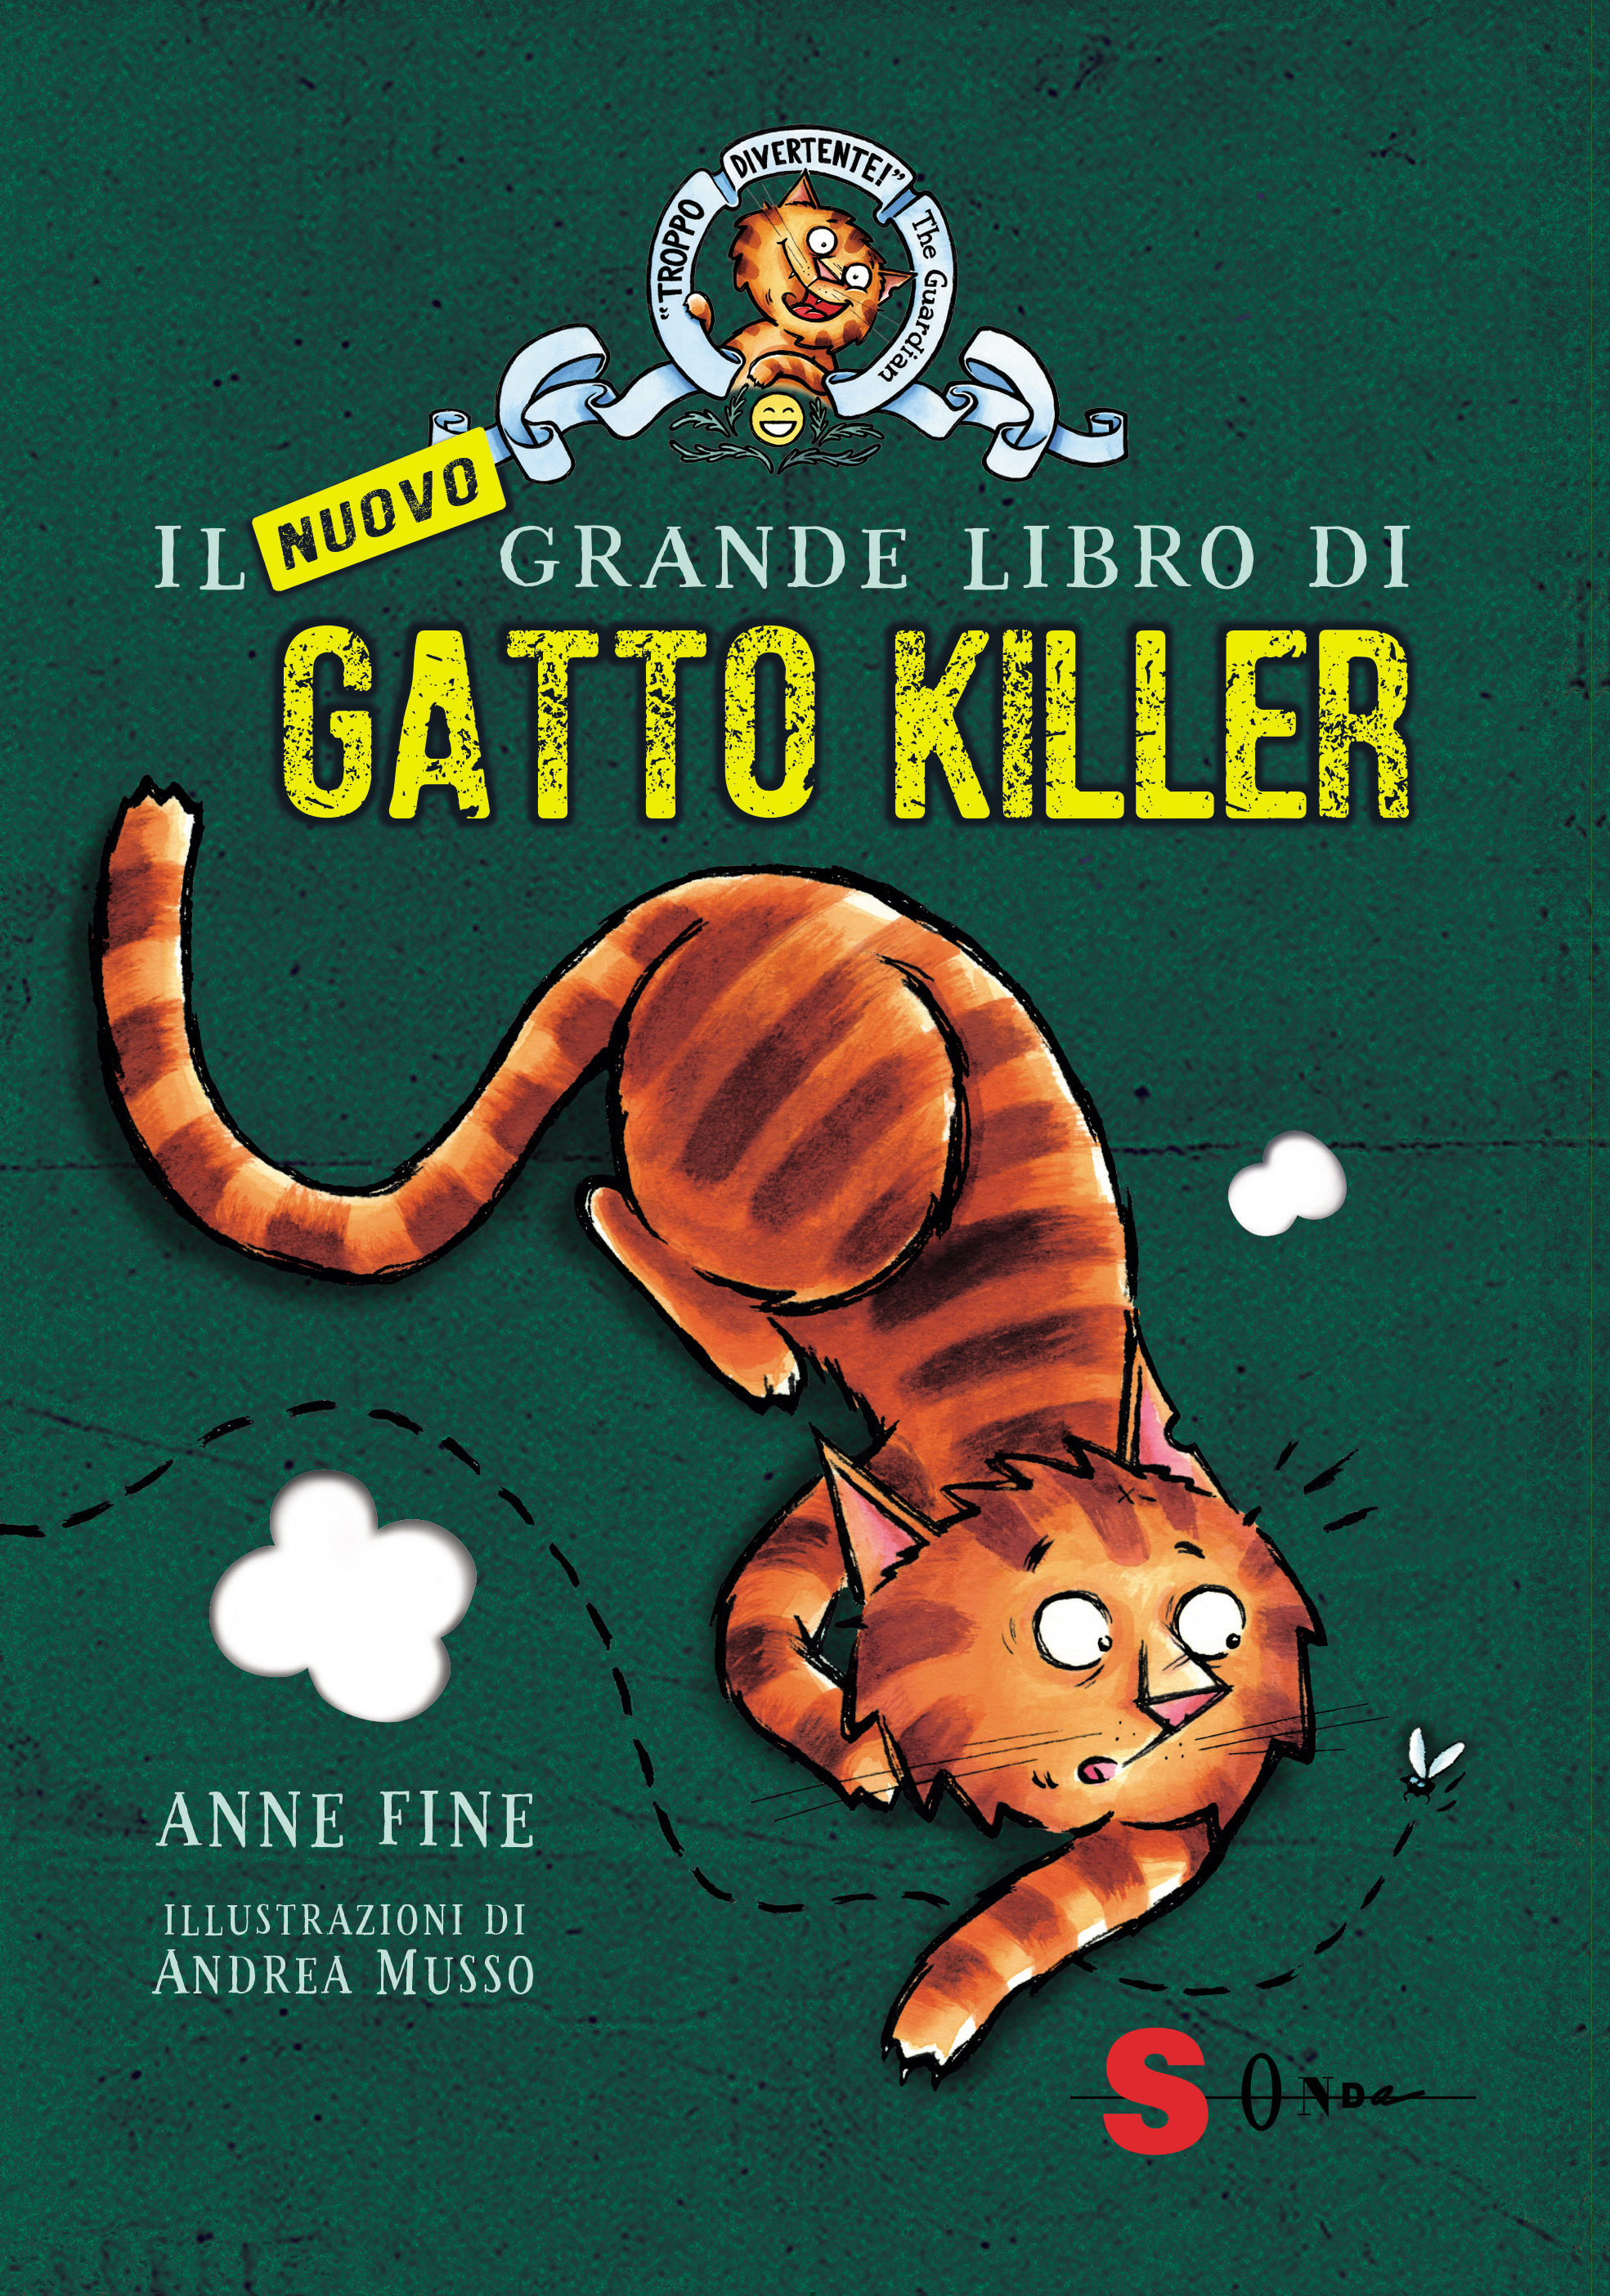 Gatto killer Archivi - Edizioni Sonda